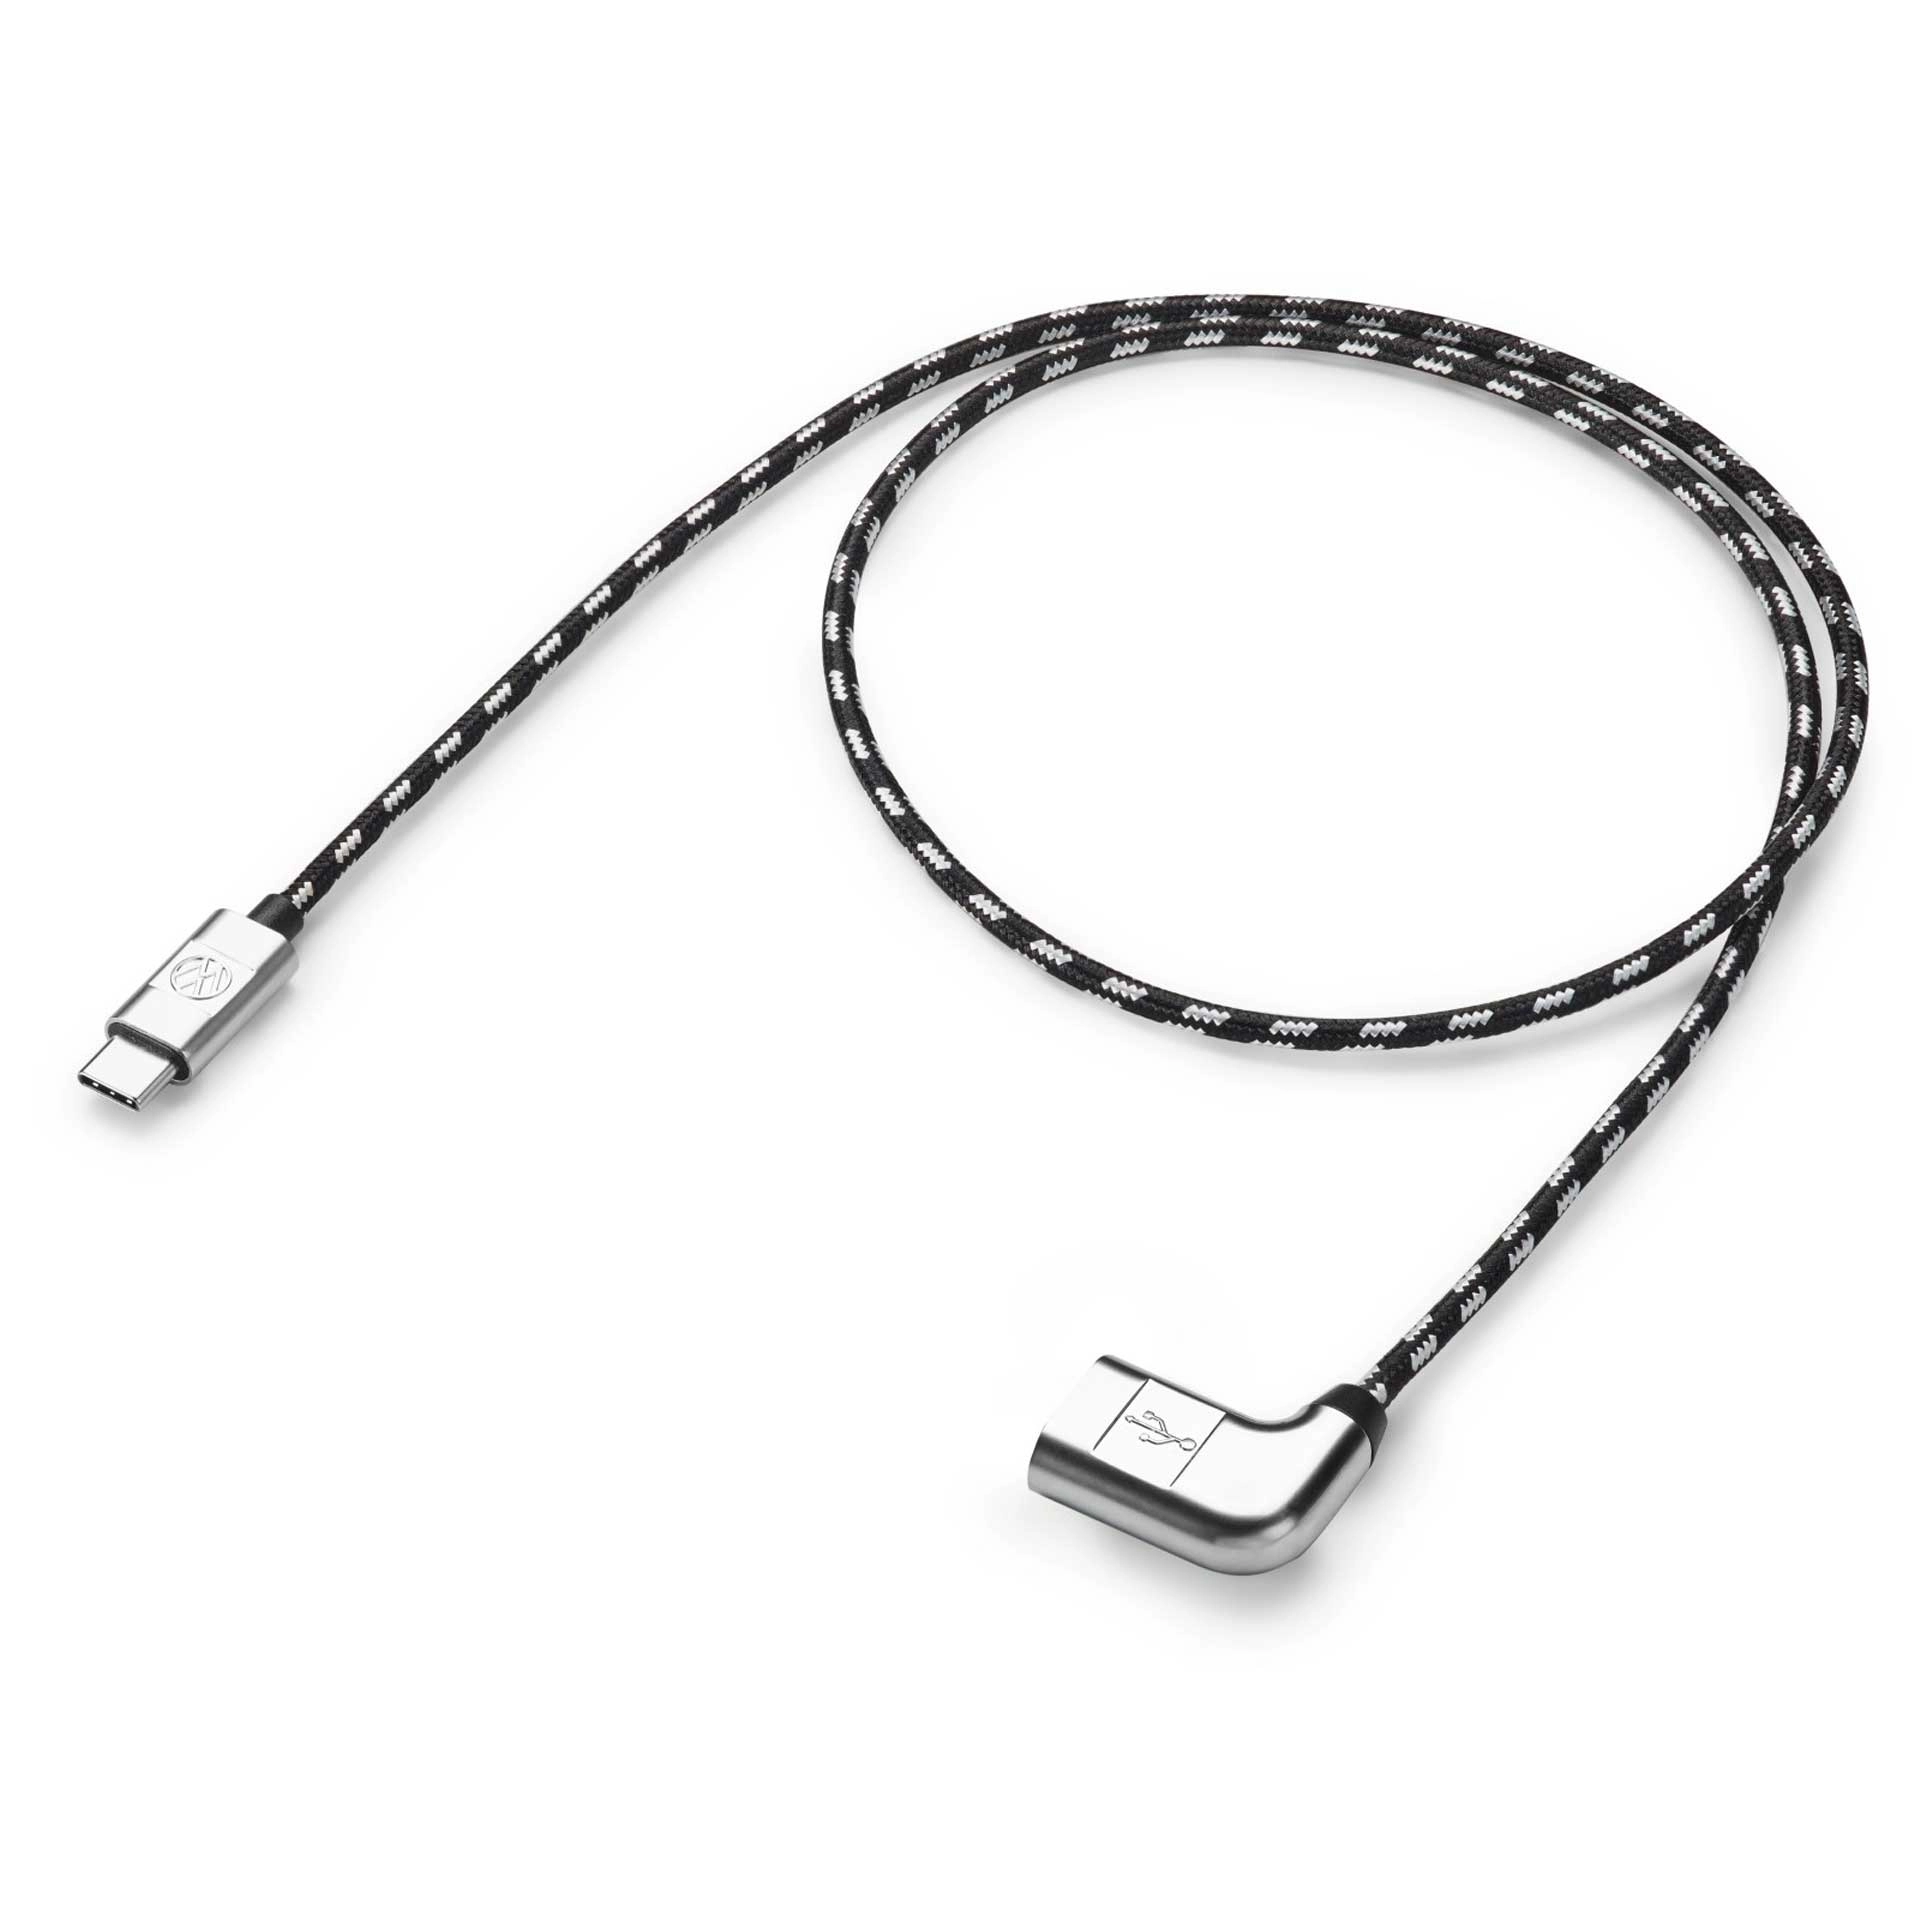 Volkswagen Anschlusskabel Ladekabel USB-C auf USB-A Buchse 70 cm 000051446BD